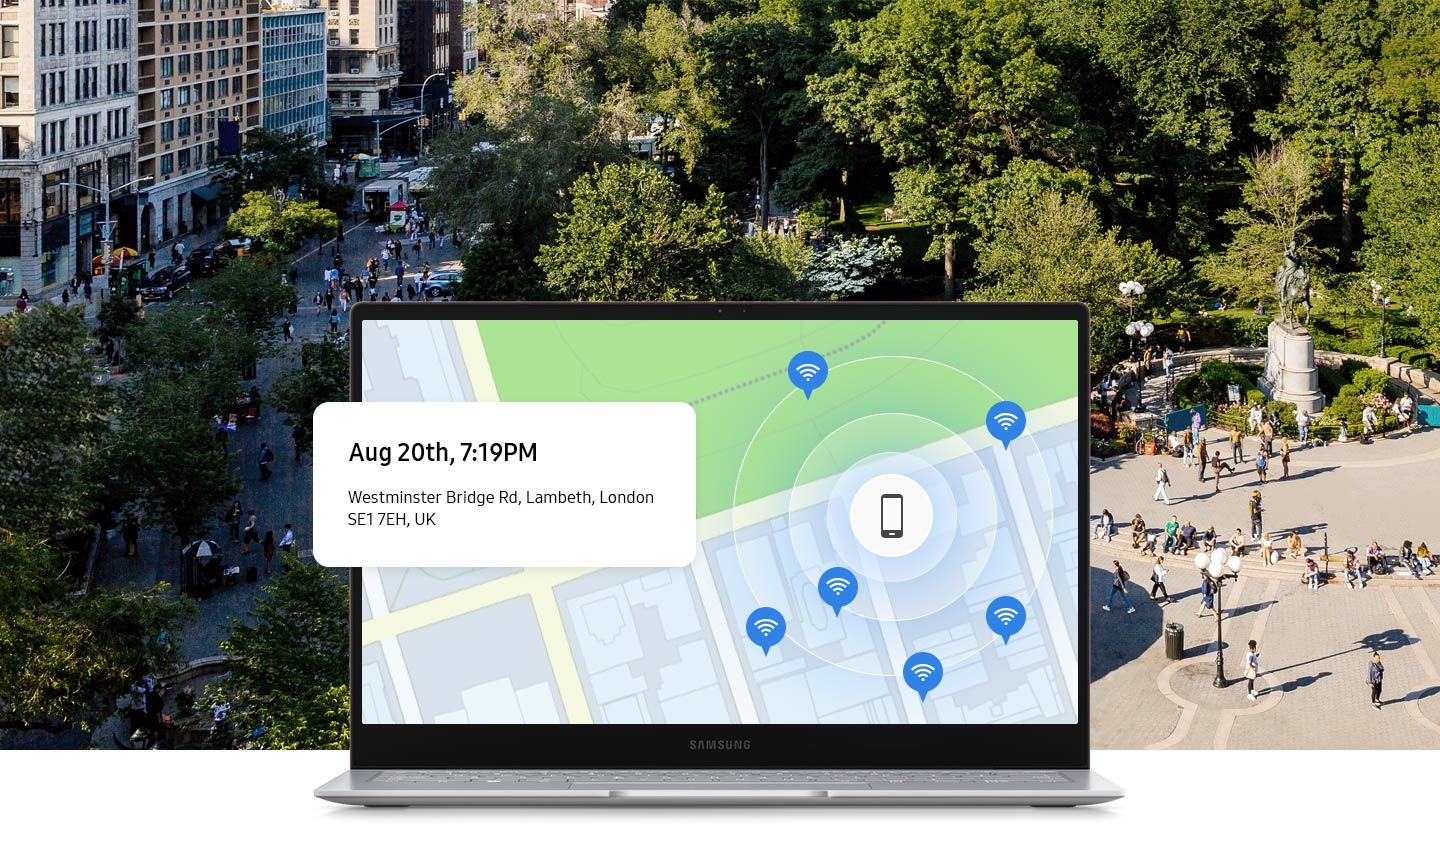 Se muestra la ciudad de Londres de fondo. En primer plano, la pantalla de una computadora portátil muestra en un mapa la ubicación de un dispositivo perdido, con la fecha y hora de la ubicación rastreada.